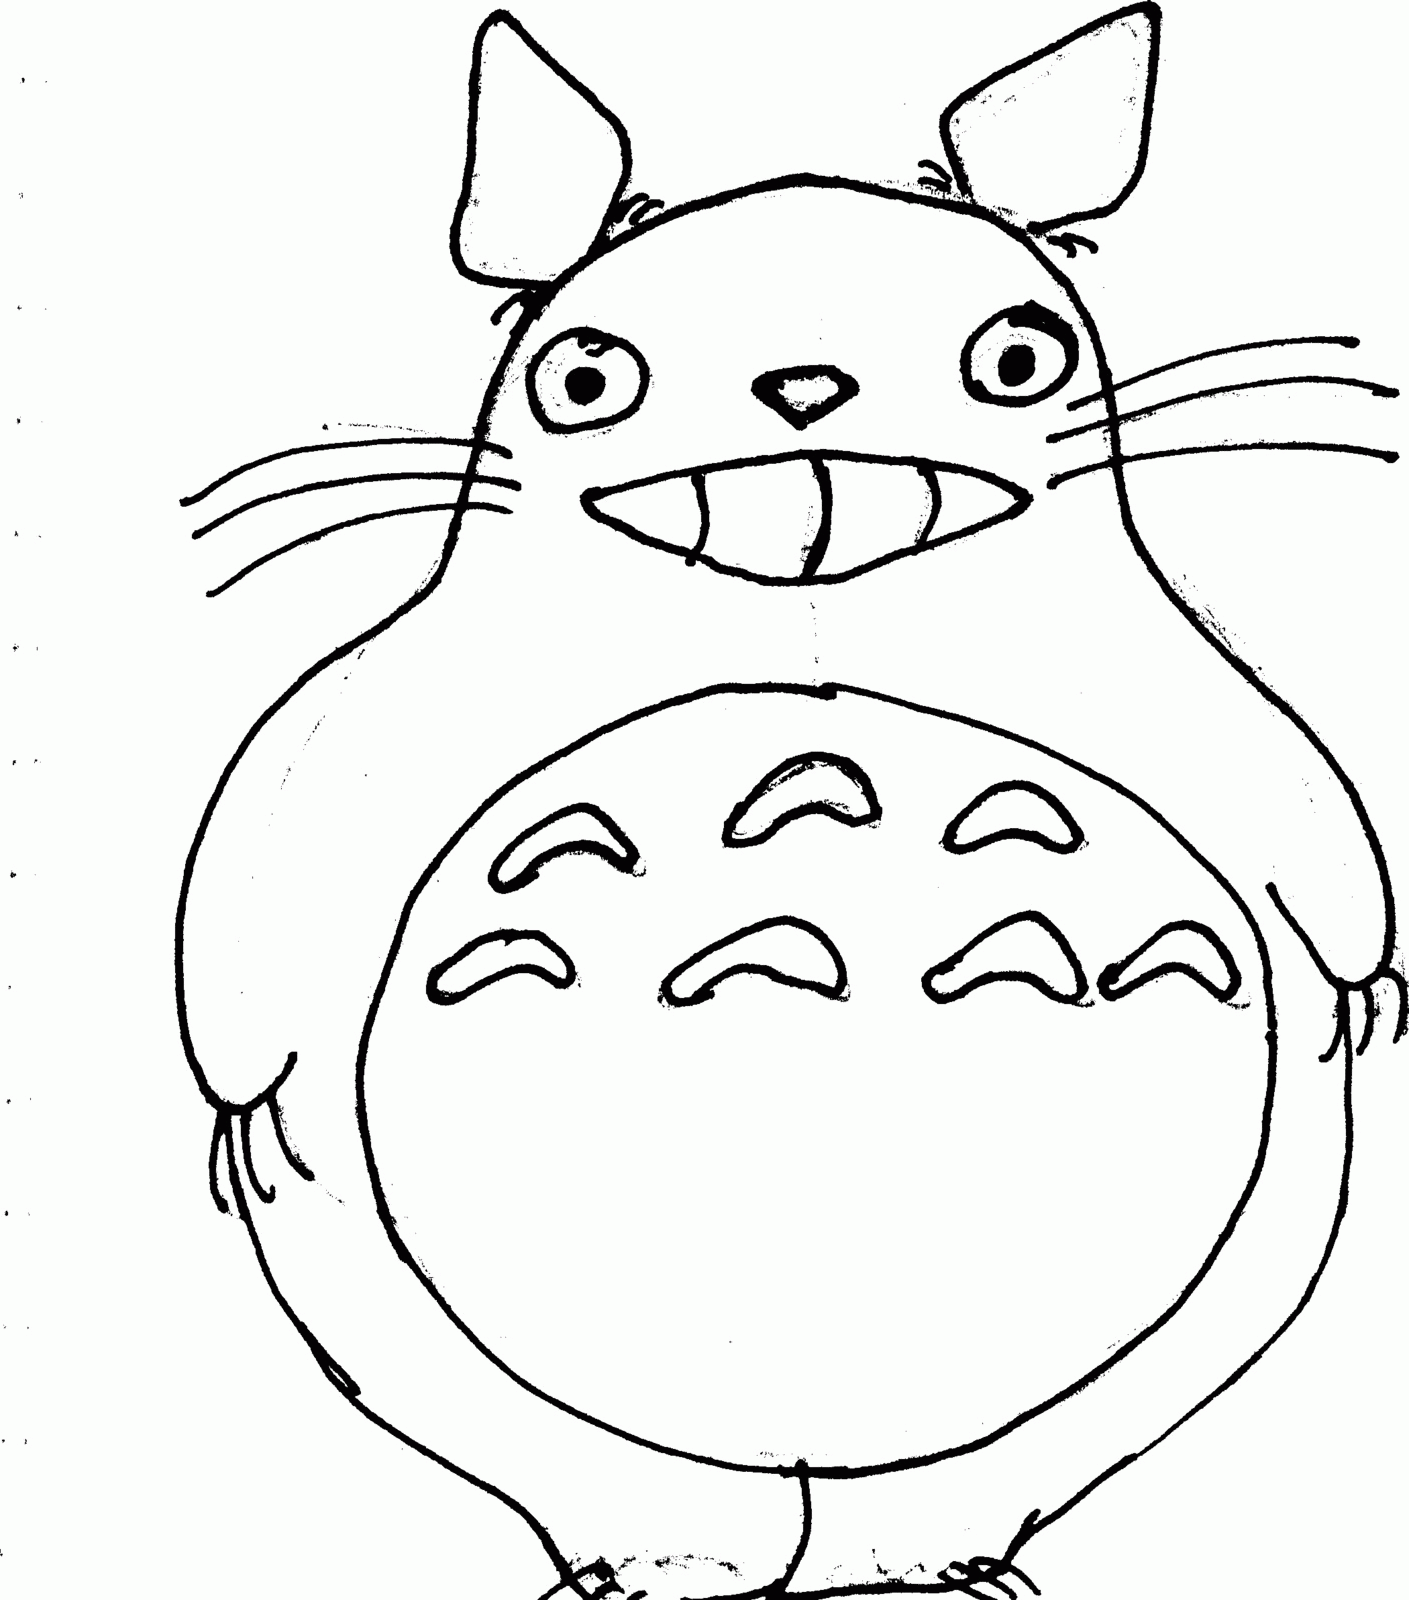 Totoro coloring page | Preschool worksheets | Pinterest | Totoro ...